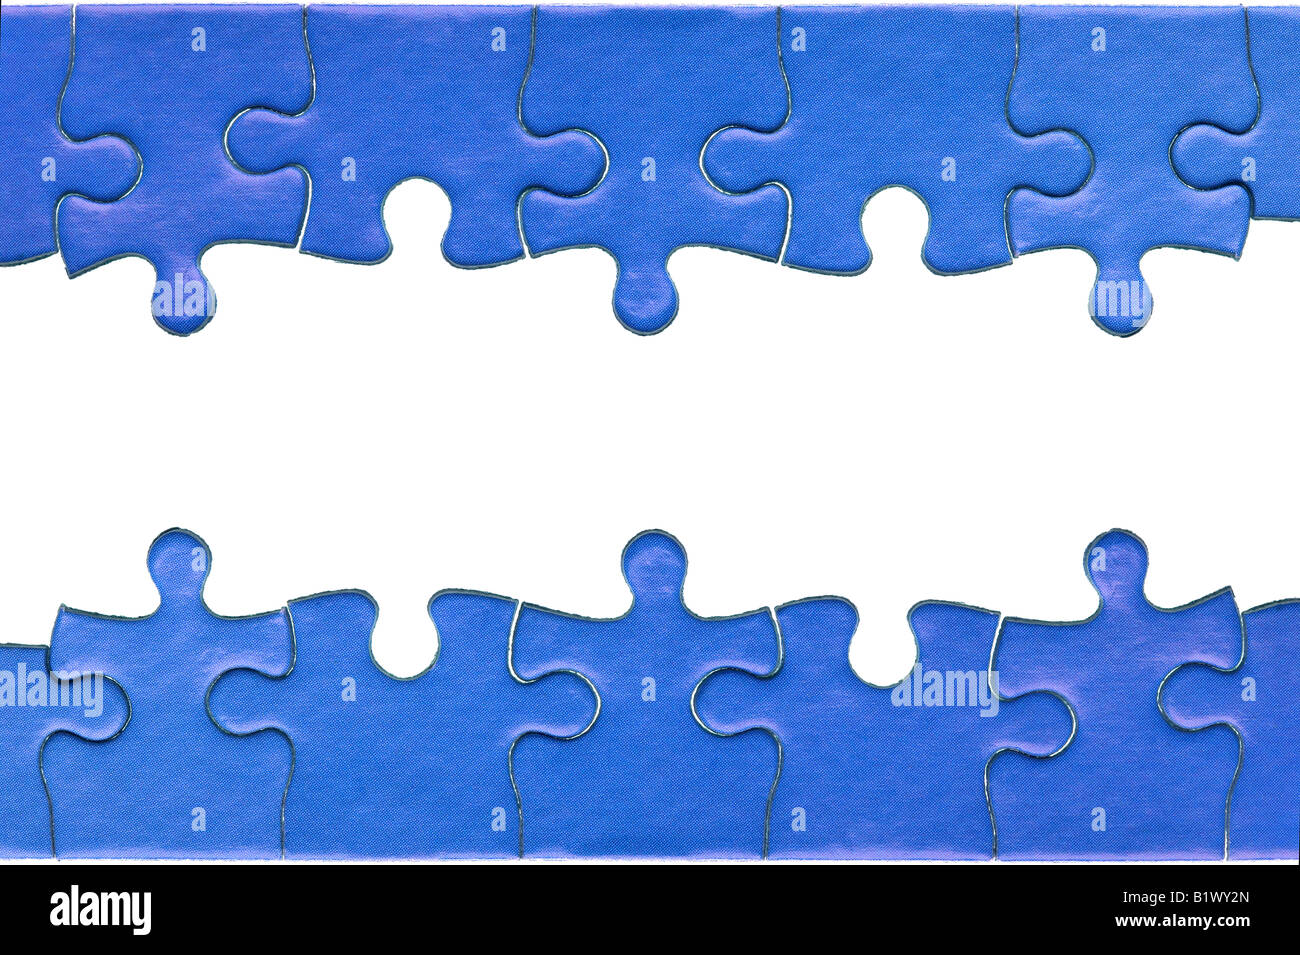 Pezzi da un autentico blue jigsaw puzzle disposti a formare una pagina di intestazione e piè di pagina isolato su uno sfondo bianco Foto Stock